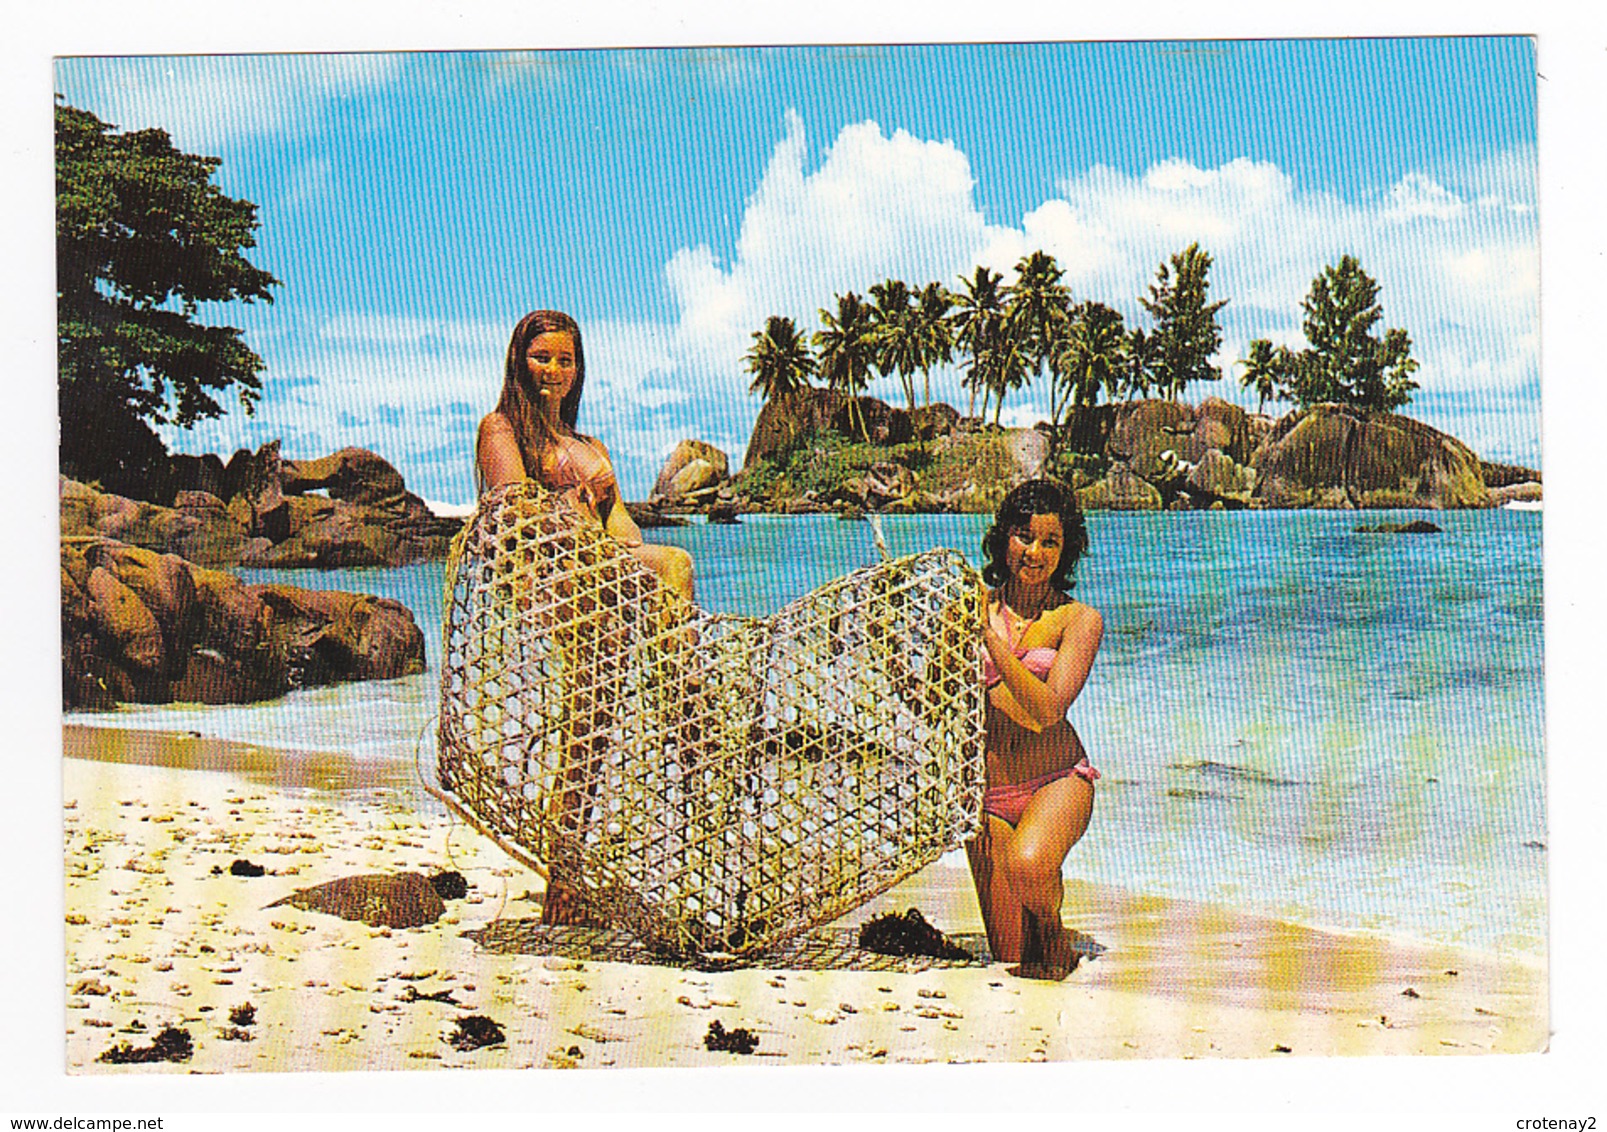 Seychelles N°16 Casier Trappe à Poissons Tenue Par 2 Belles Jeunes Femmes En Maillot De Bain Photo Eden LTD Box 326 Mahe - Seychelles